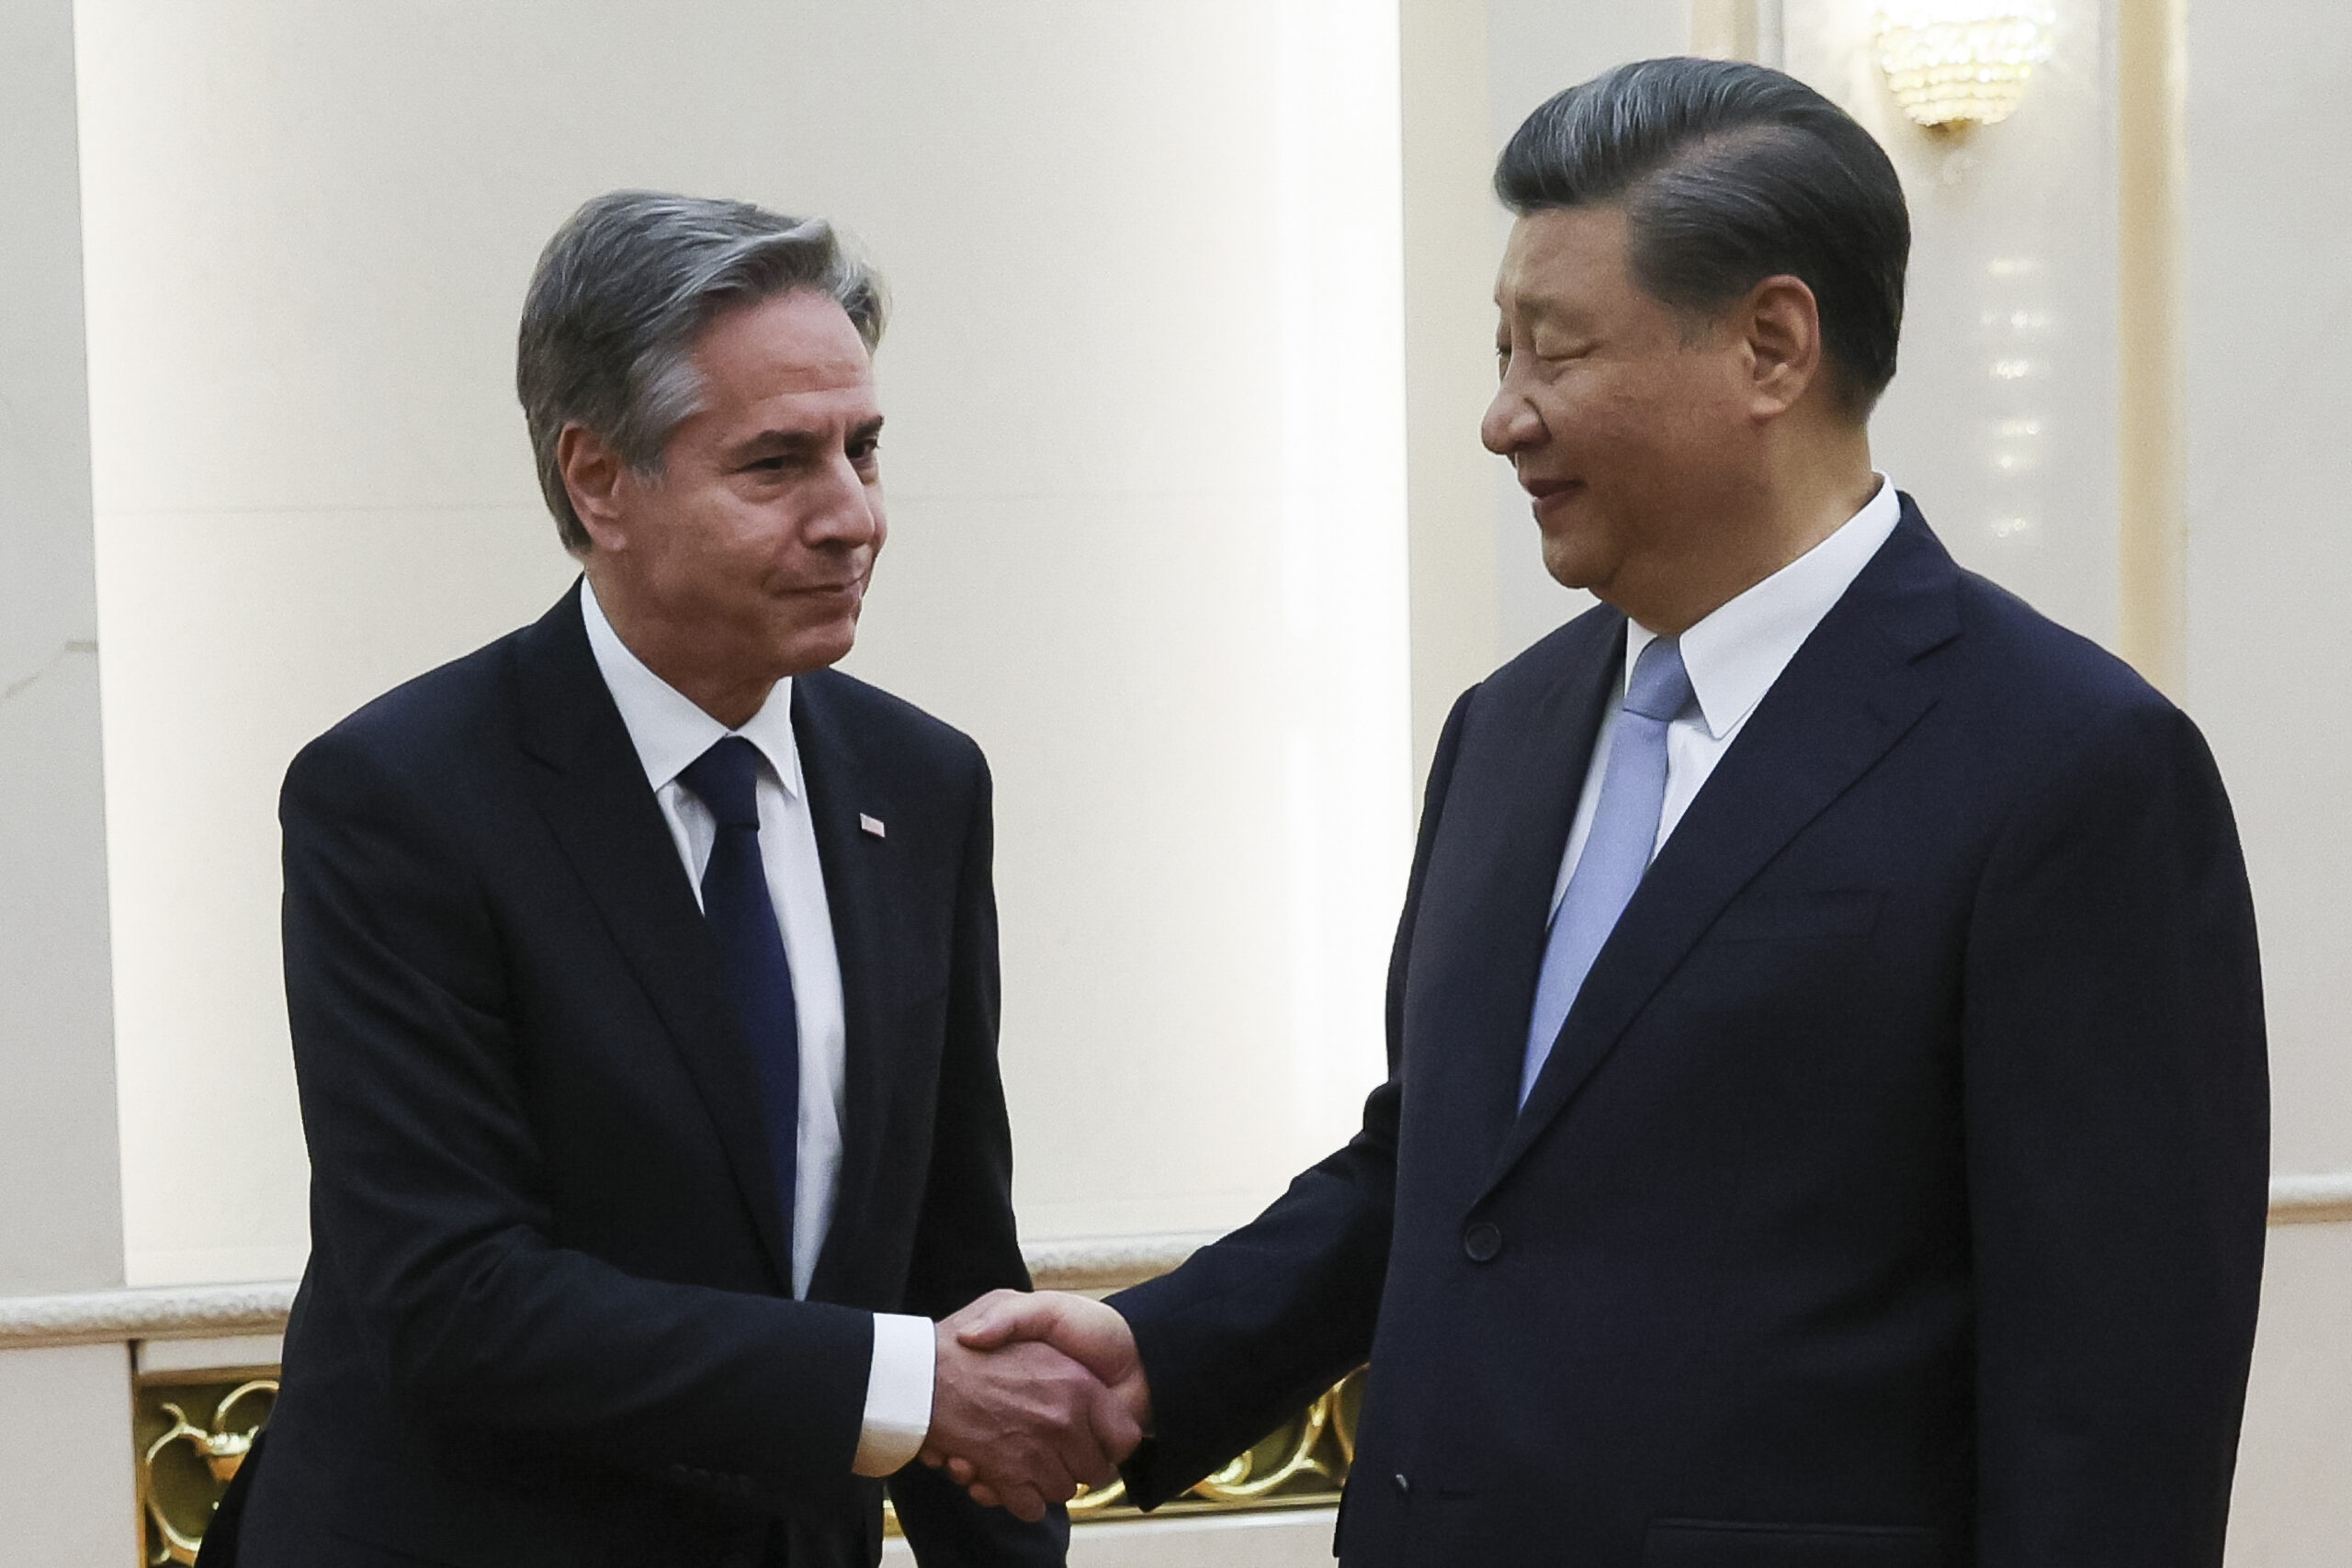 Τζο Μπάιντεν: Οι σχέσεις ΗΠΑ και Κίνας είναι στον σωστό δρόμο – Εξαίρετη δουλειά από Μπλίνκεν